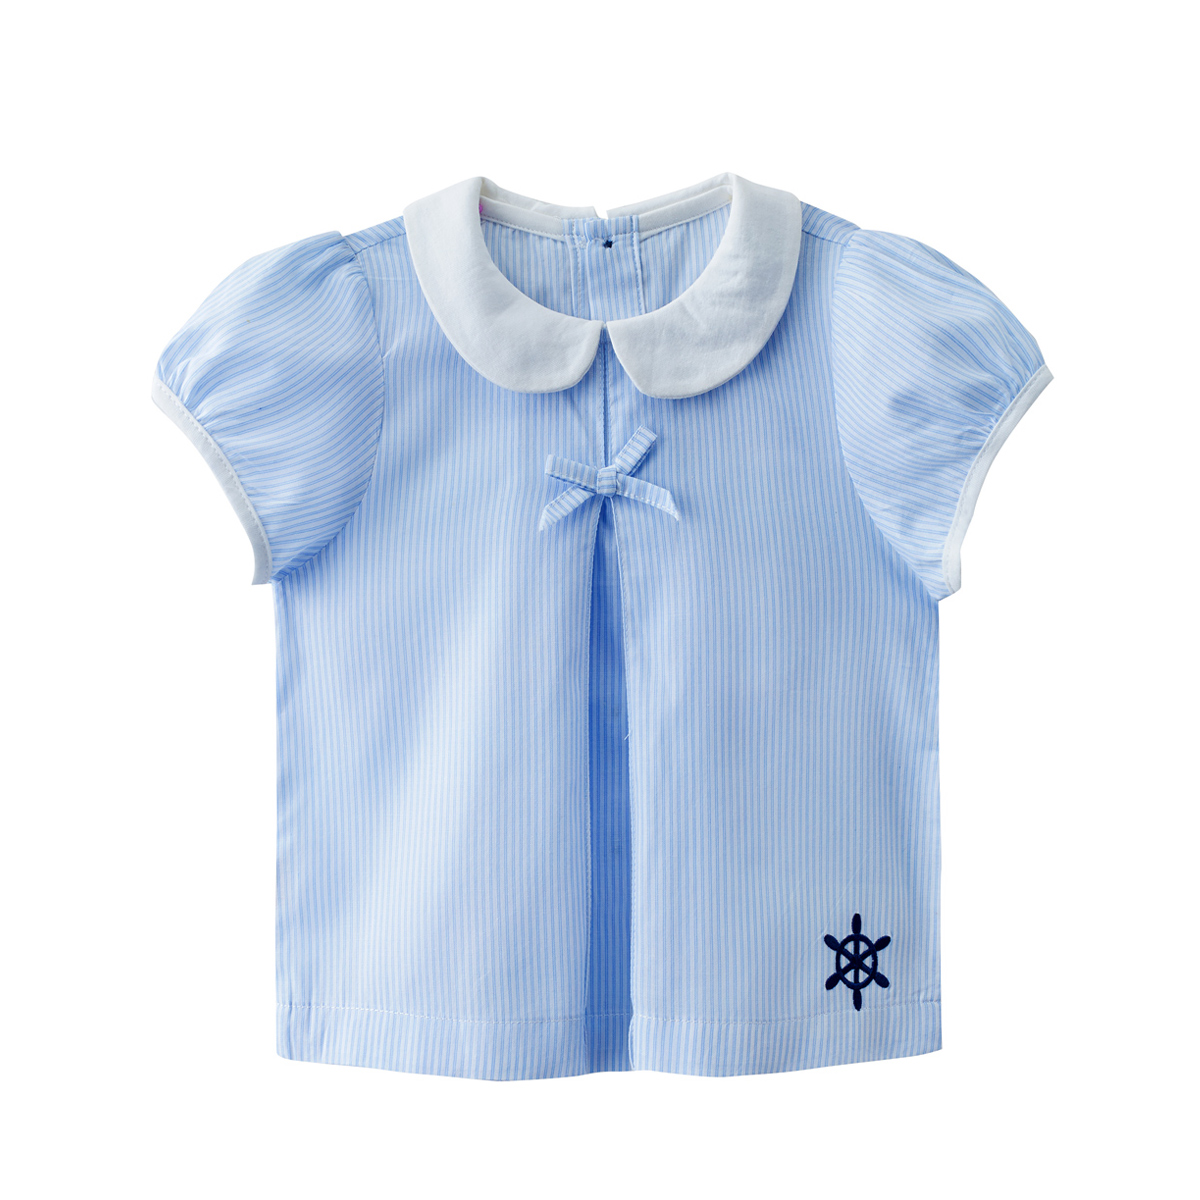 皮偌乔品牌童装男女童短袖T恤宝宝婴儿衣服装纯棉夏季2015新款